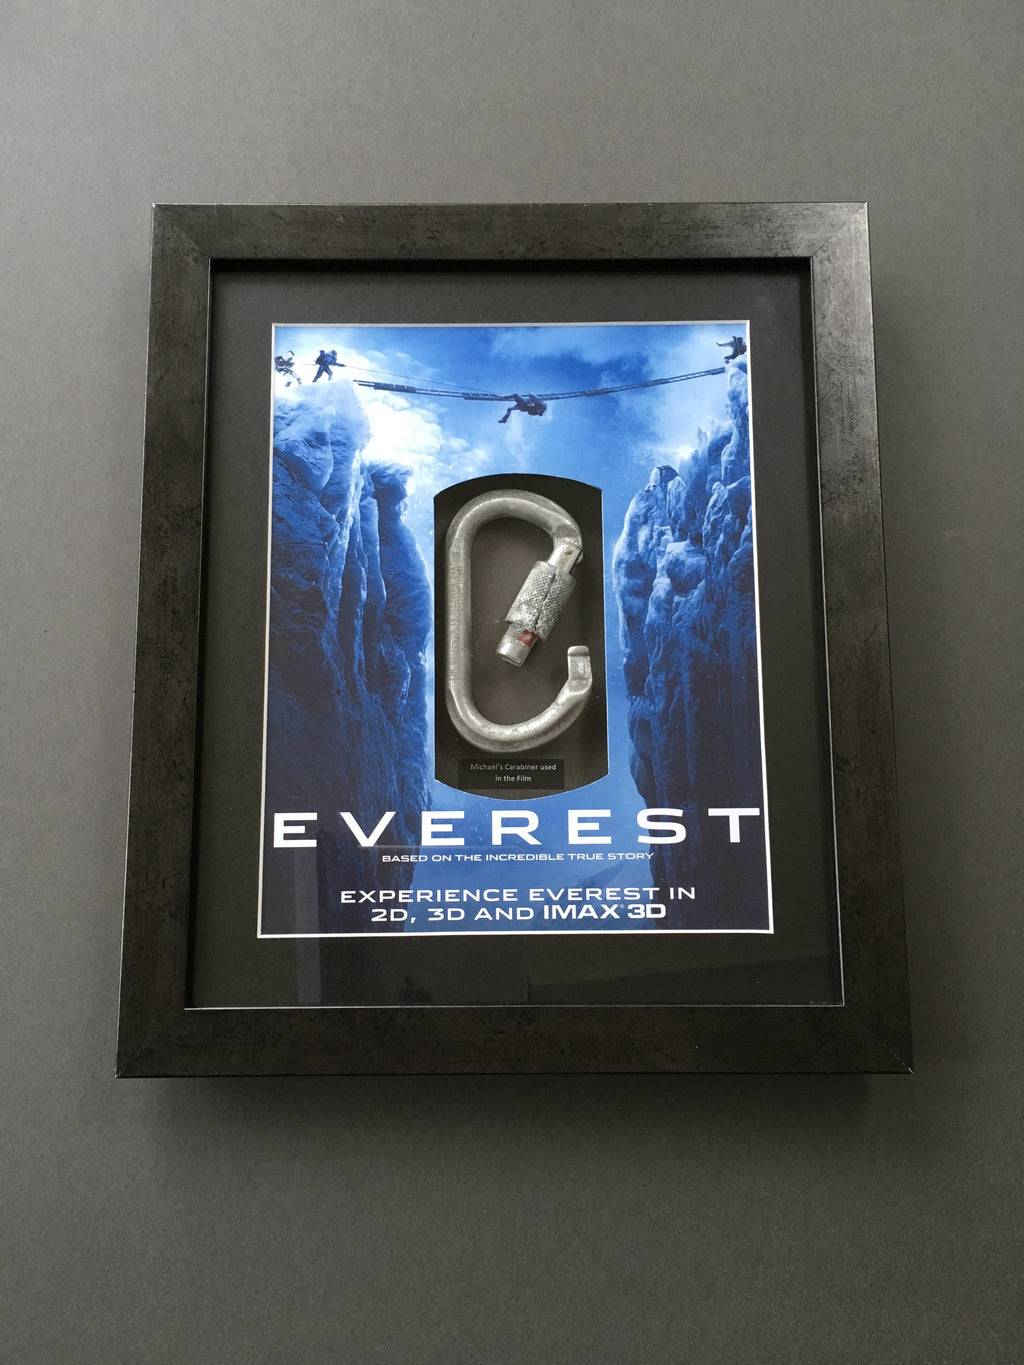 Everest (2015) - Michael's Carabiner